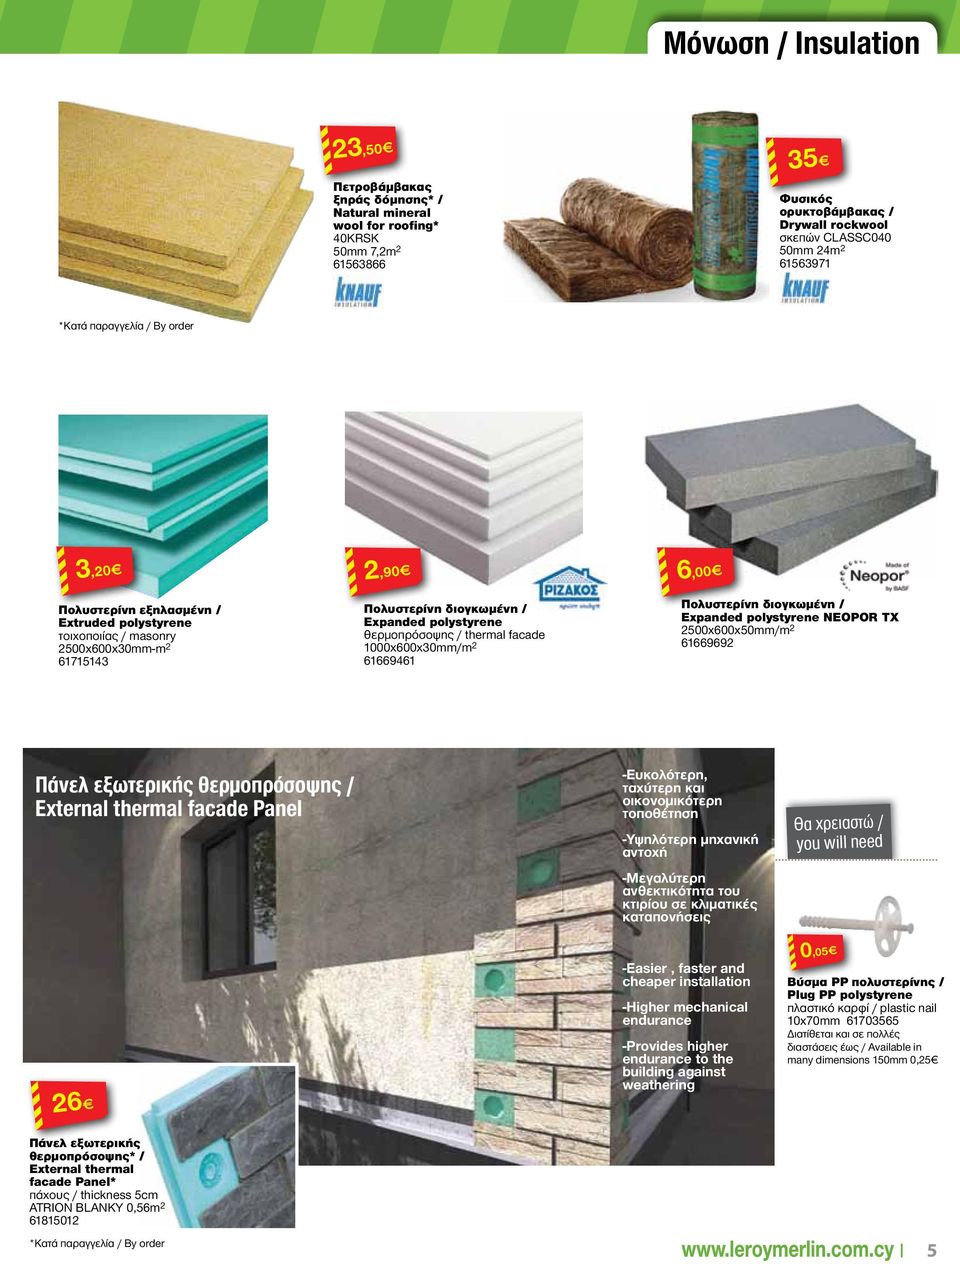 Πολυστερίνη διογκωμένη / Expanded polystyrene NEOPOR ΤΧ 00x600x0/m 666969 Πάνελ εξωτερικής θερμοπρόσοψης / External thermal facade Panel -Ευκολότερη, ταχύτερη και οικονομικότερη τοποθση -Υψηλότερη